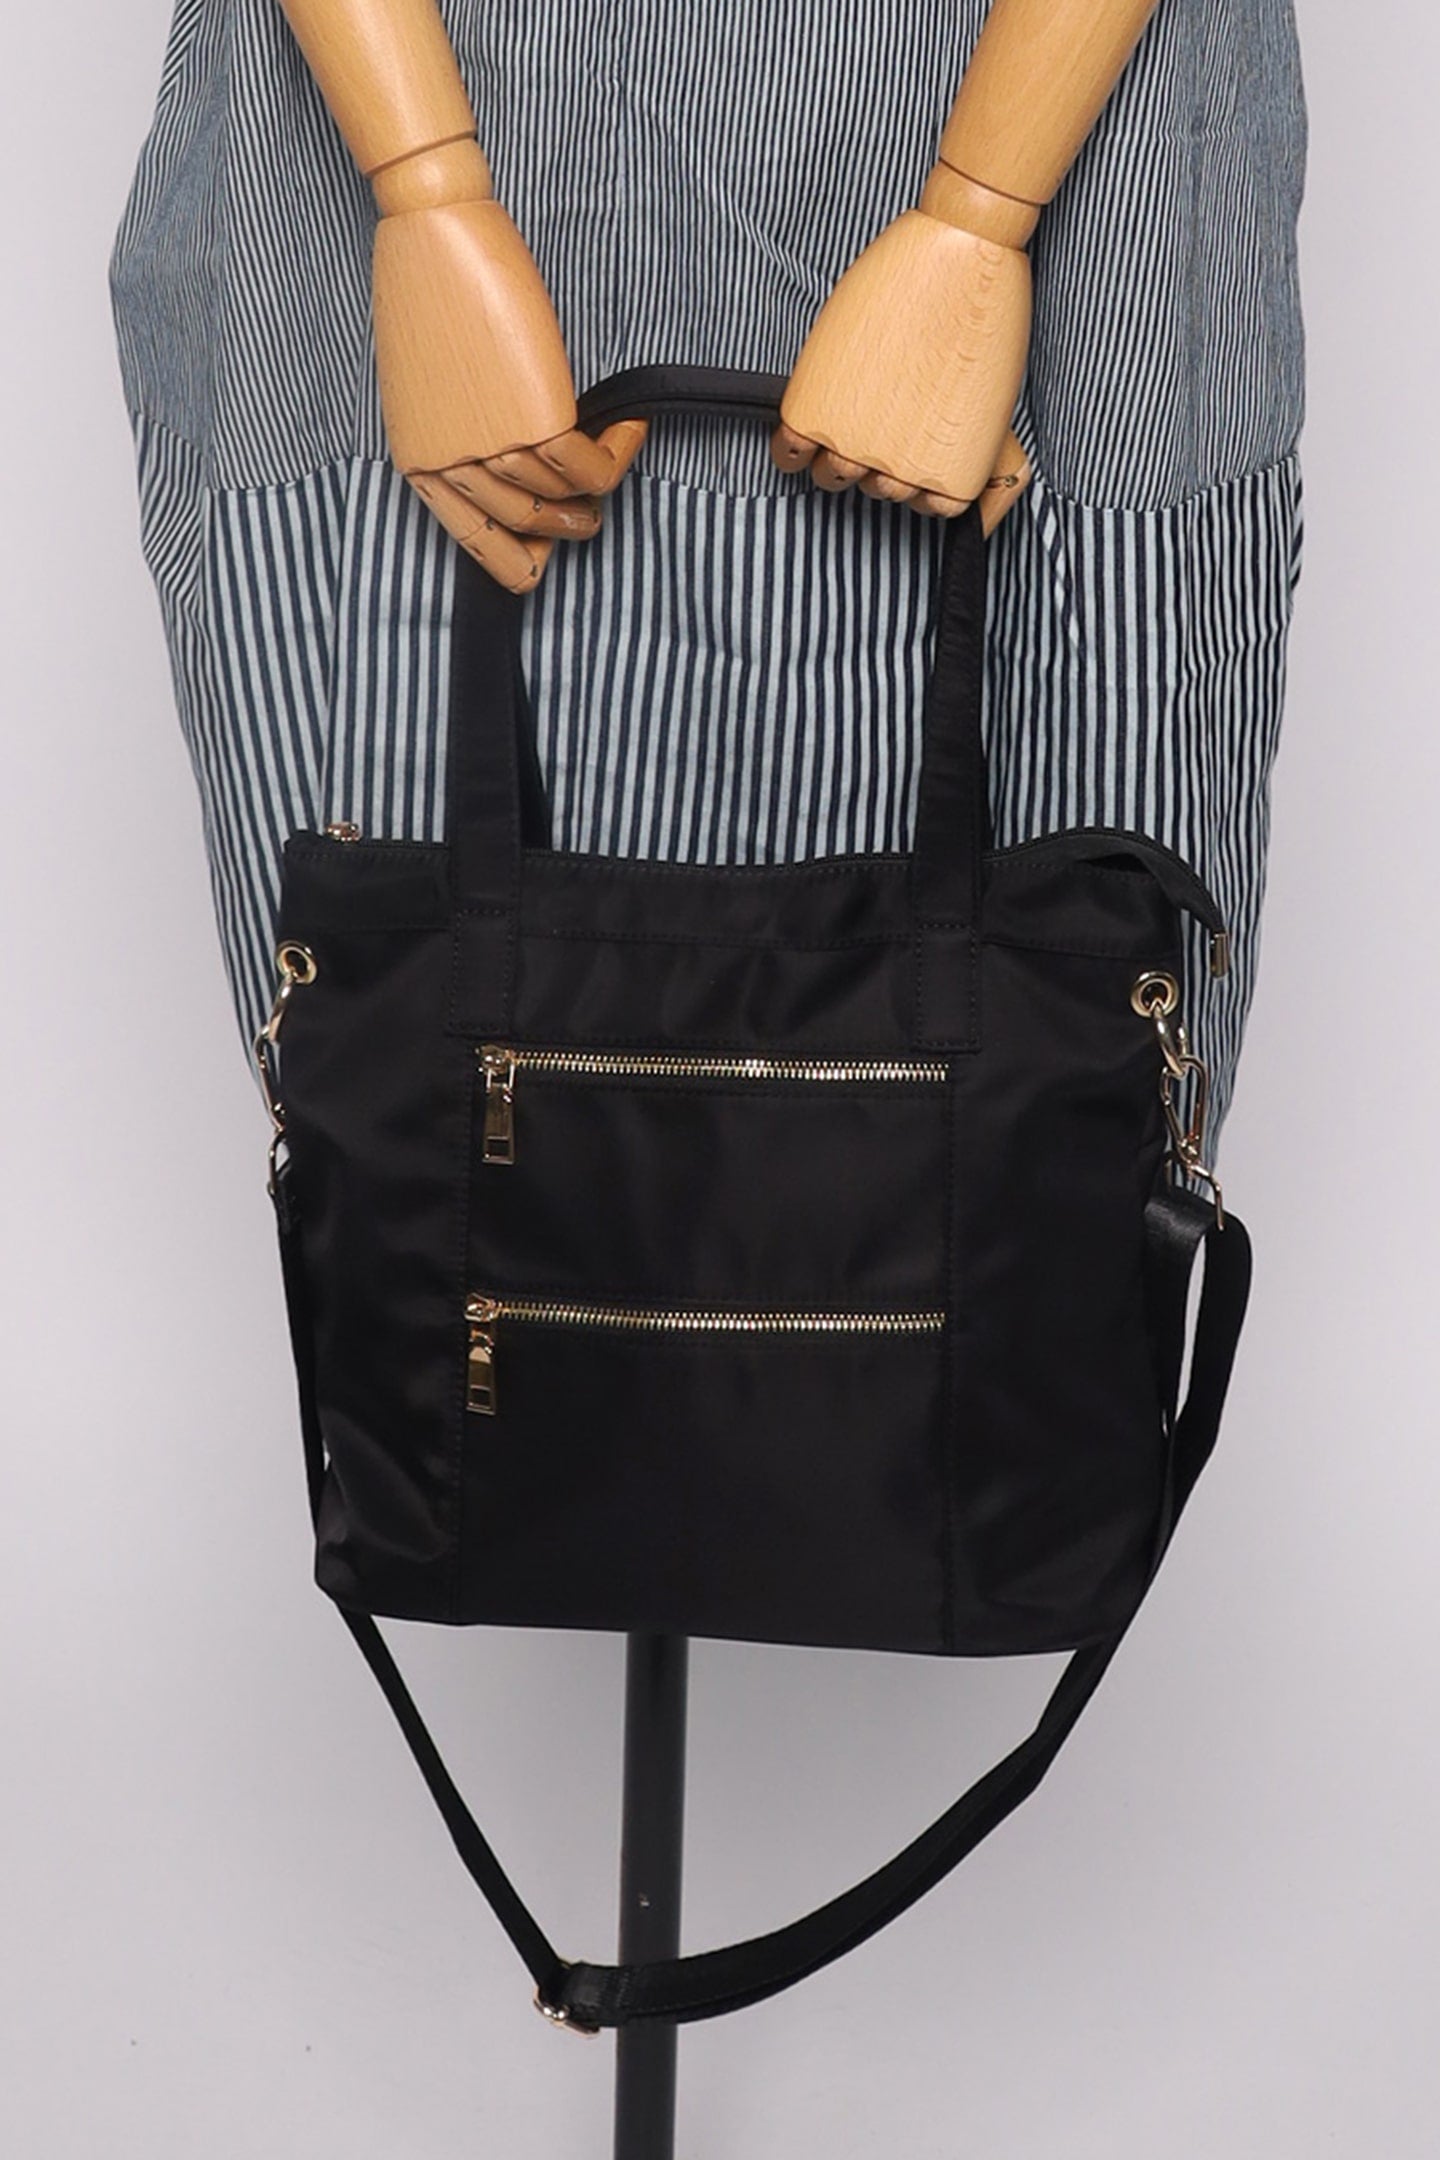 Kaly Tote Bag In Black